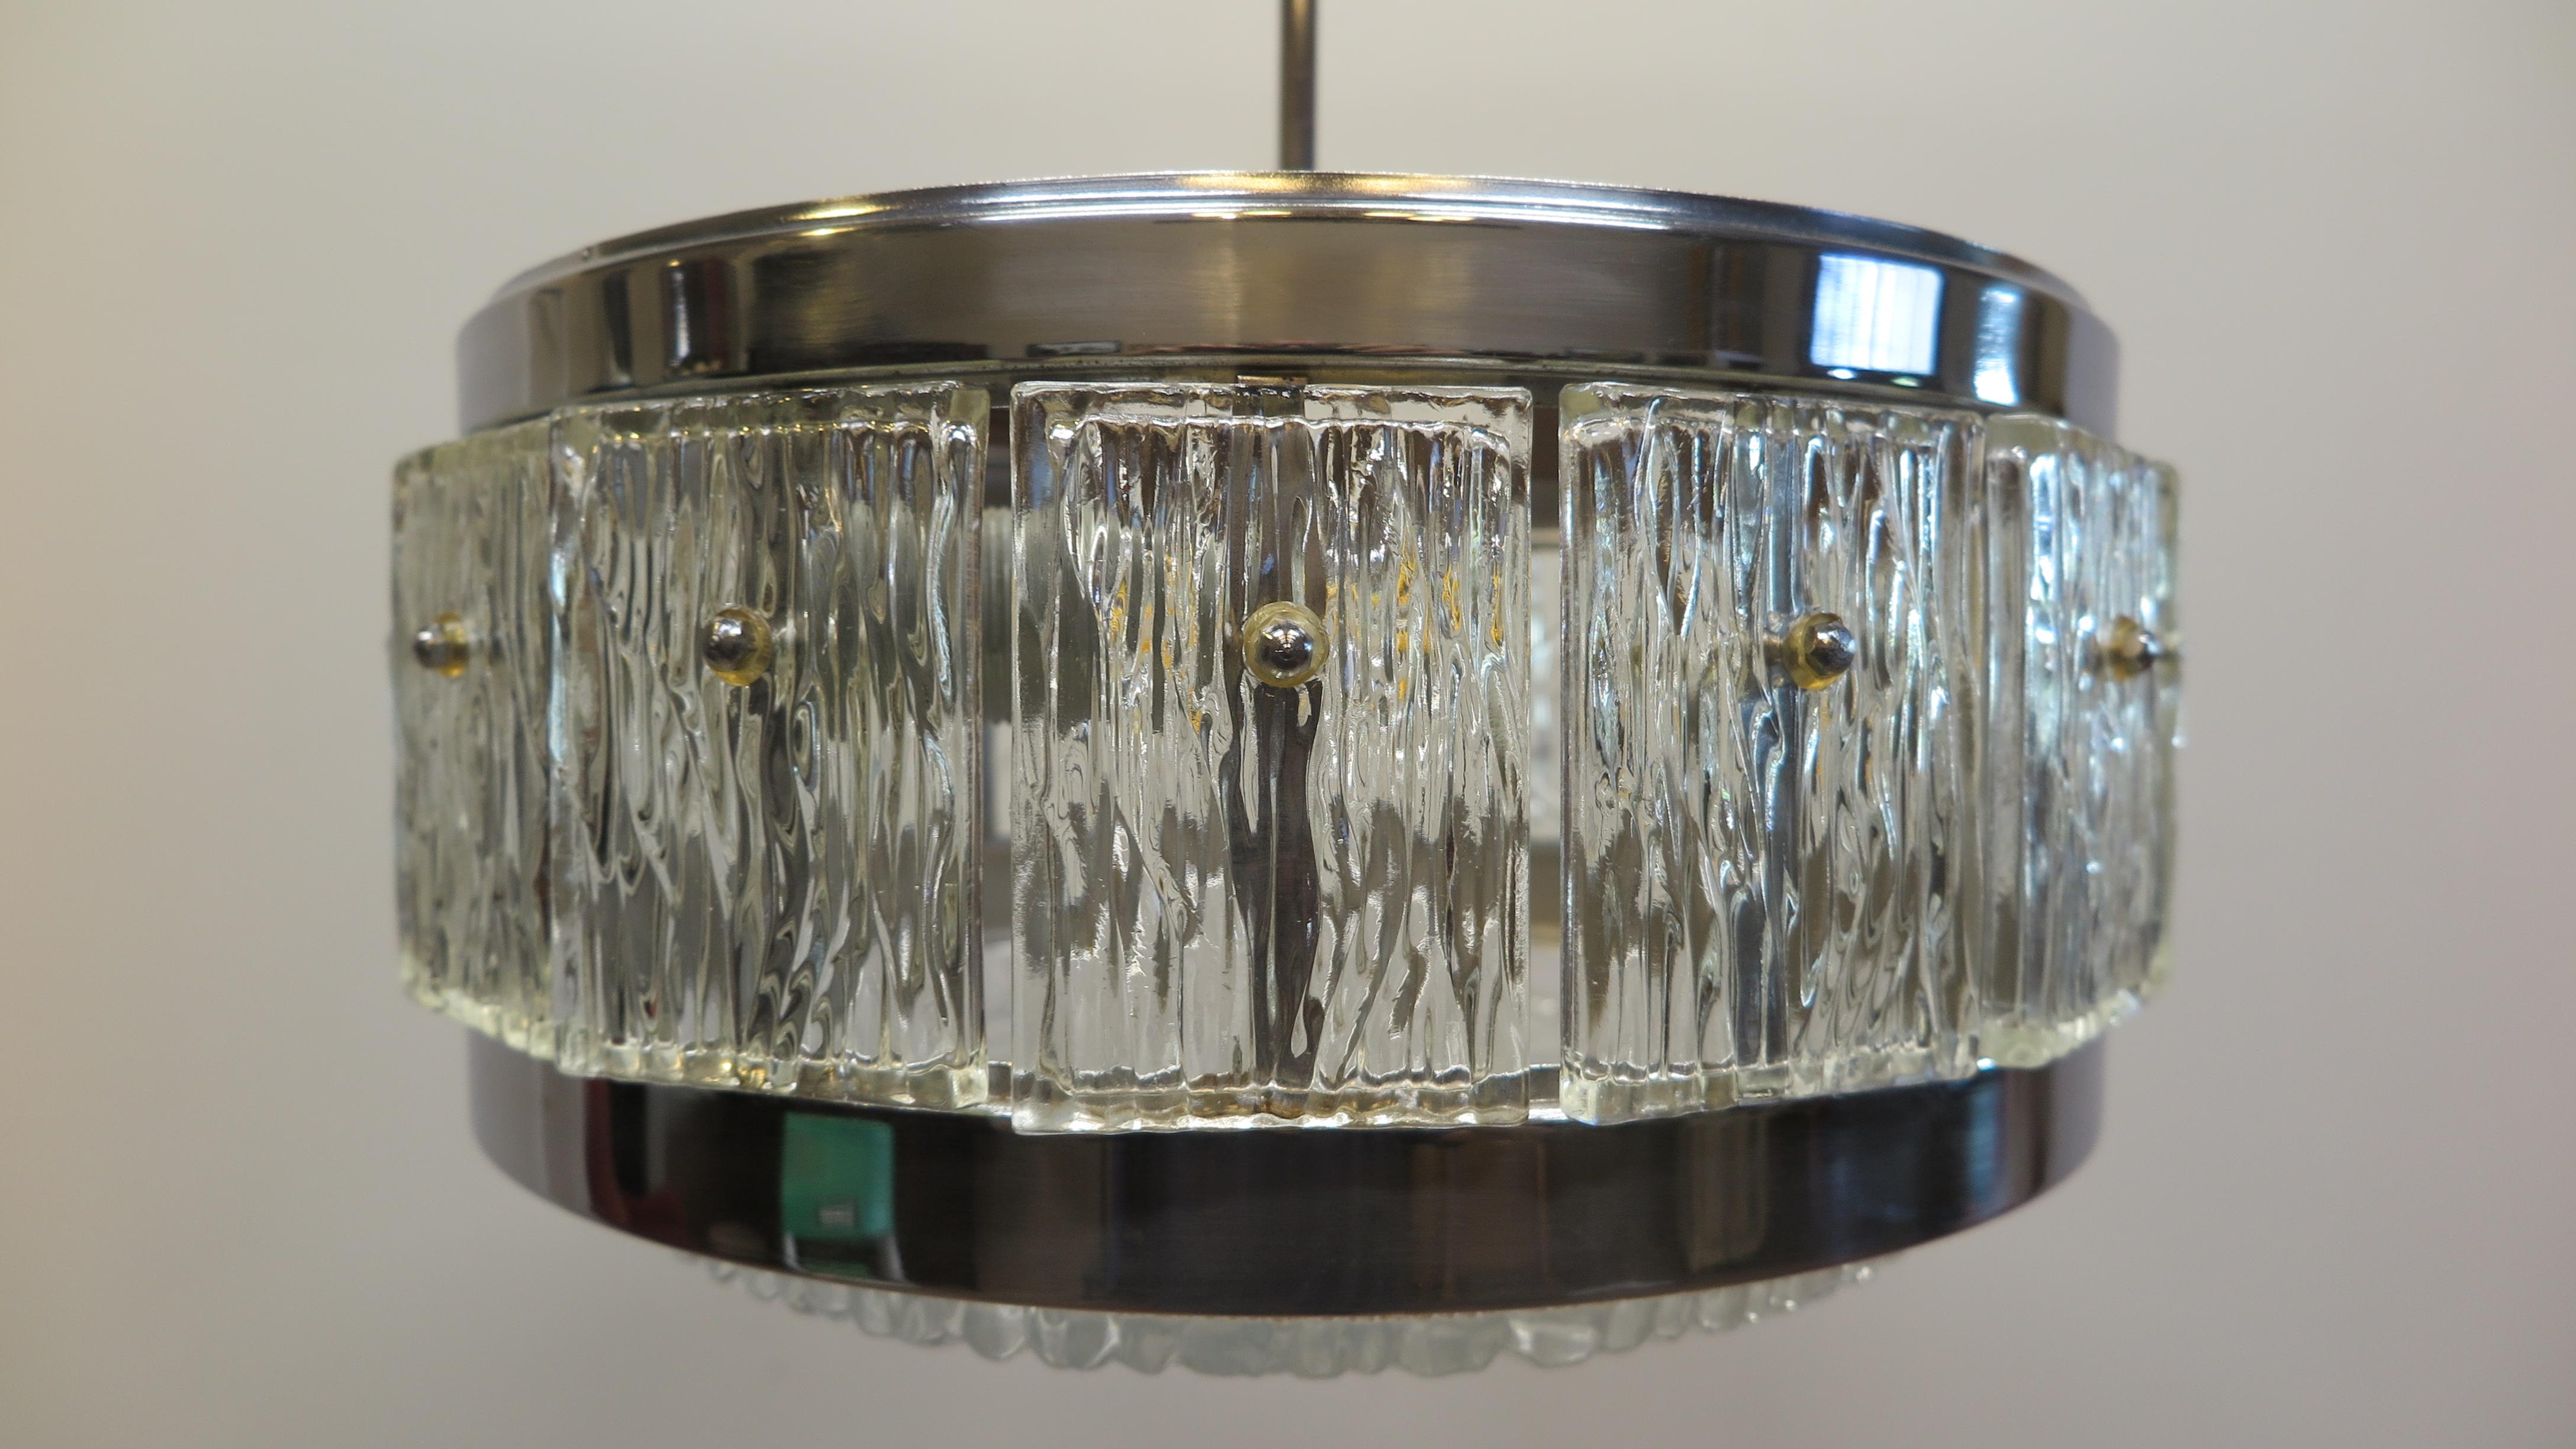 Doria Leuchten Mid Century geformt Glas Pendelleuchte 1960s.  Verchromter, runder Stahlrahmen mit schön geformten Glasscheiben und passendem, geformtem Glasdiffusor.   Vierzehn rechteckige, gepresste Glasscheiben mit Wellenmuster und ein großer,